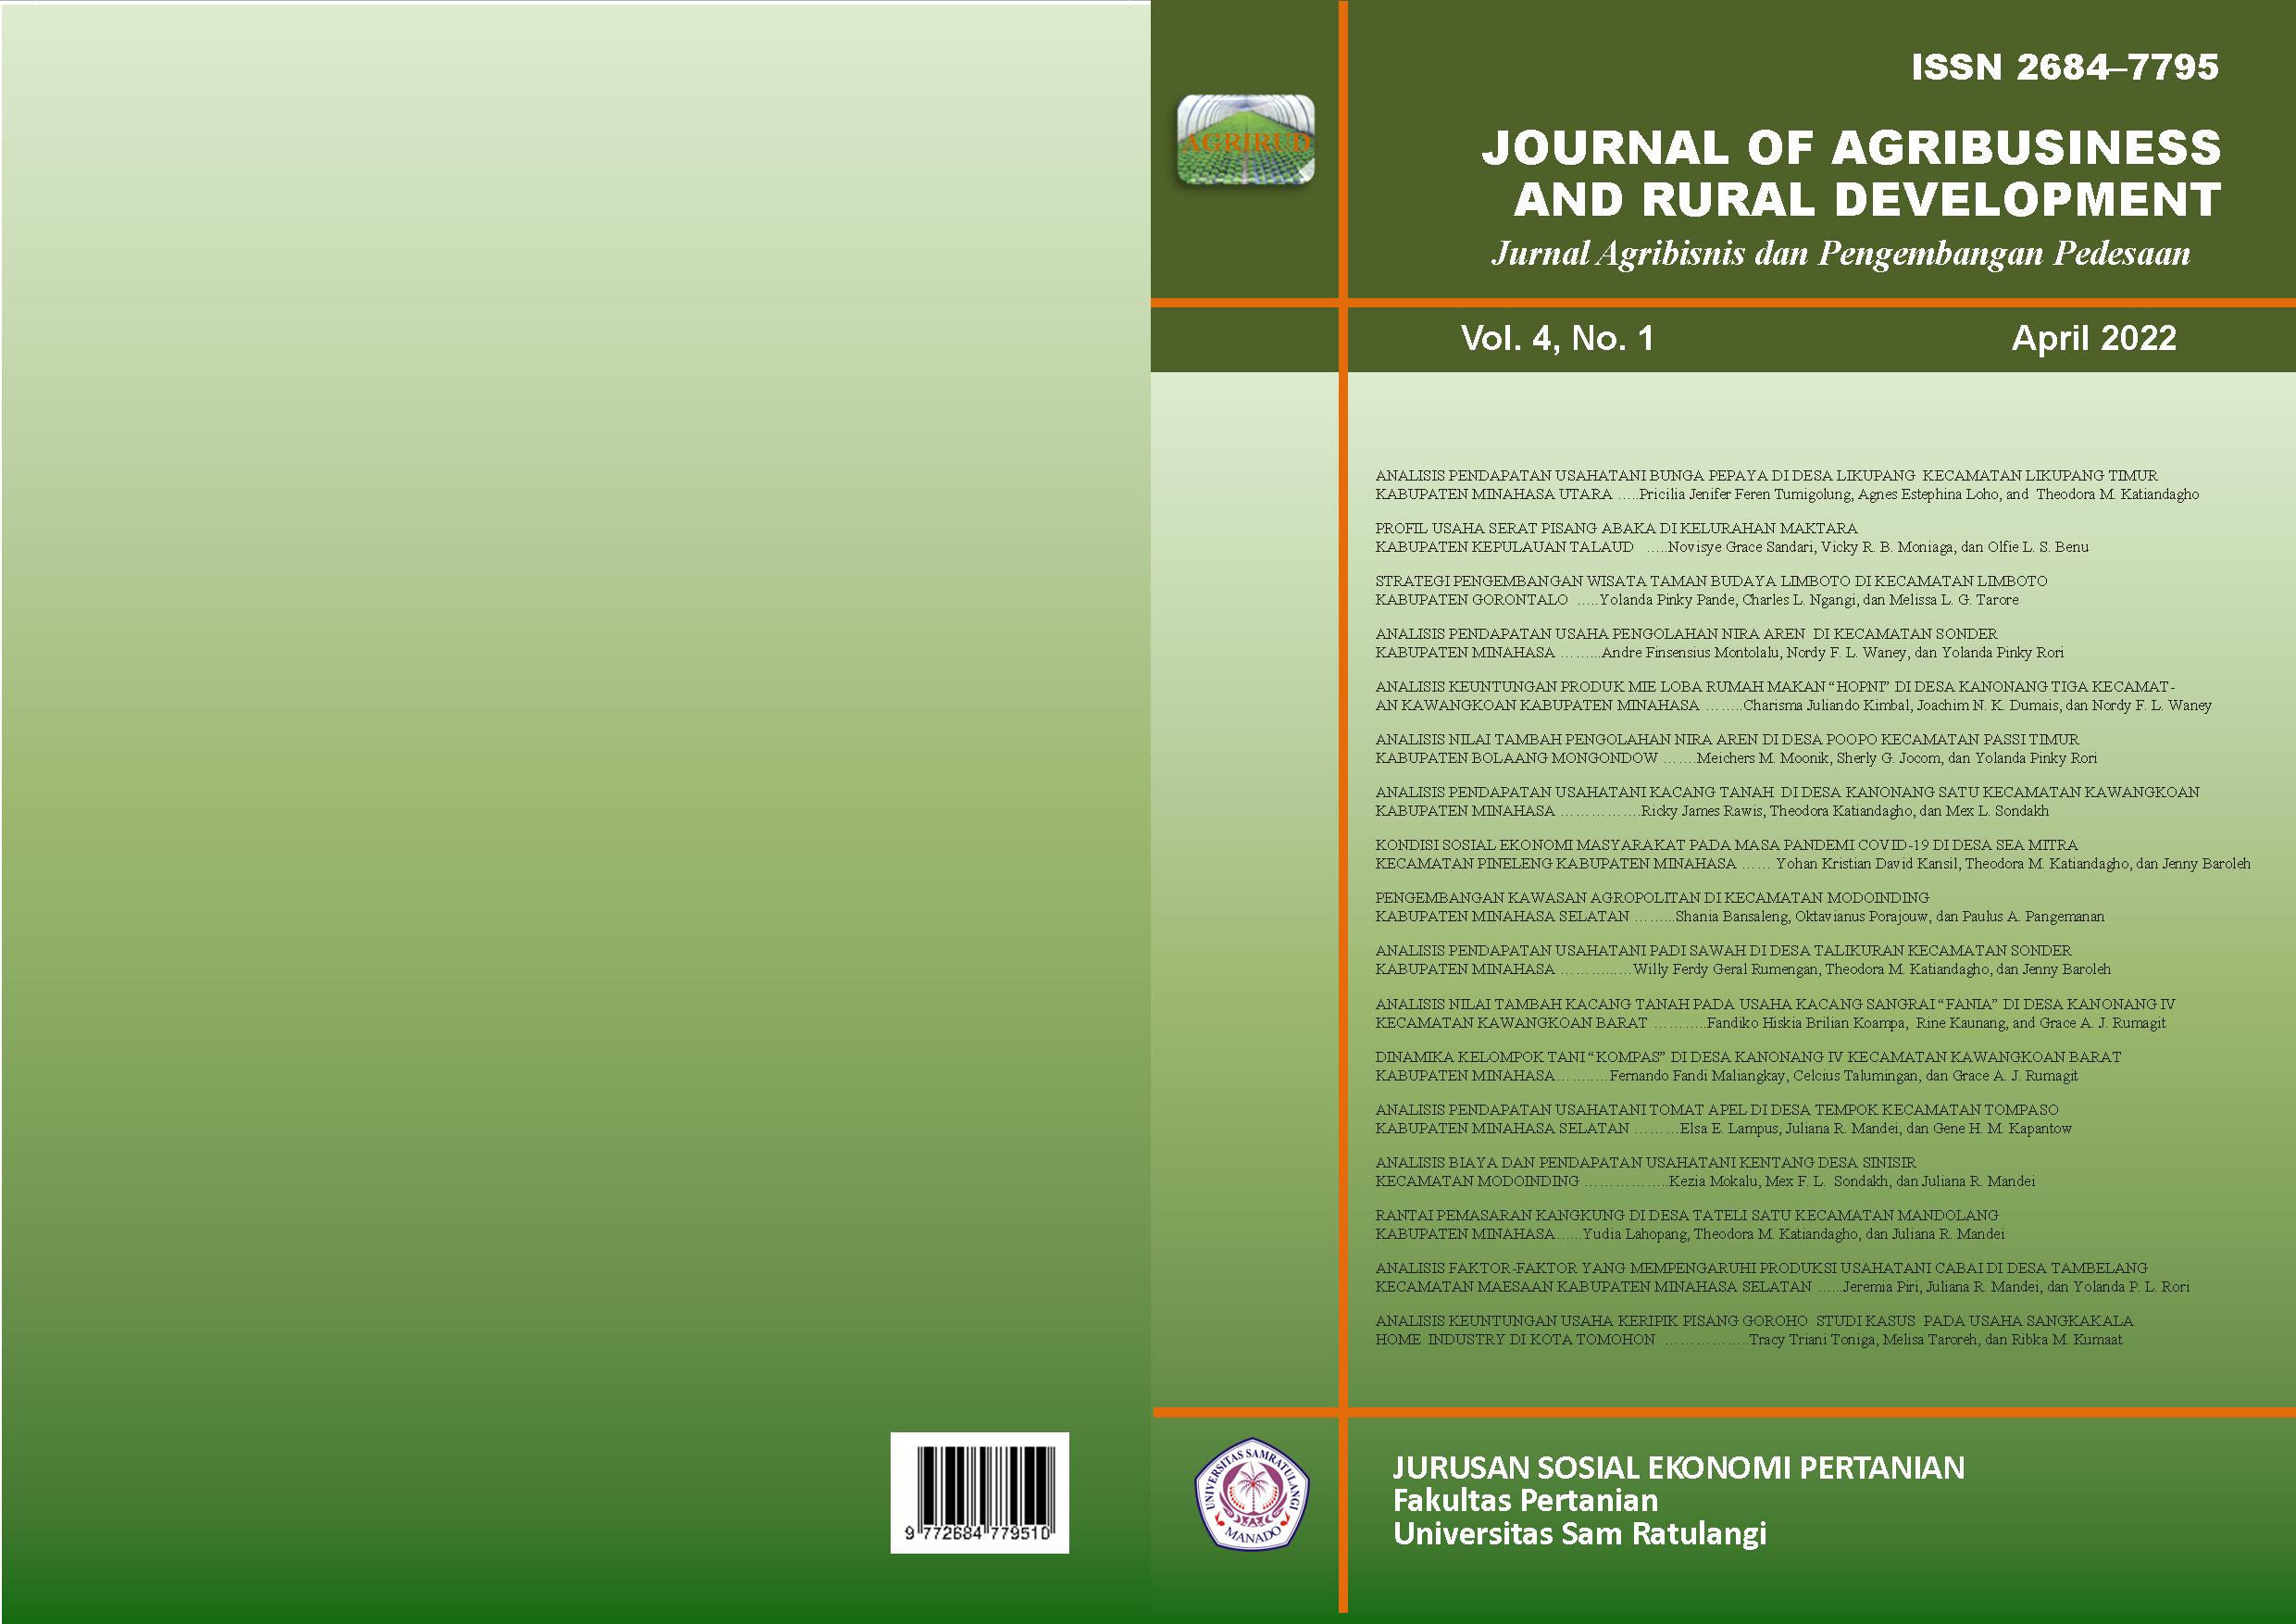 					View Vol. 4 No. 1 (2022): Journal of Agribusiness and Rural Development (Jurnal Agribisnis dan Pengembangan Pedesaan) - April 2022
				